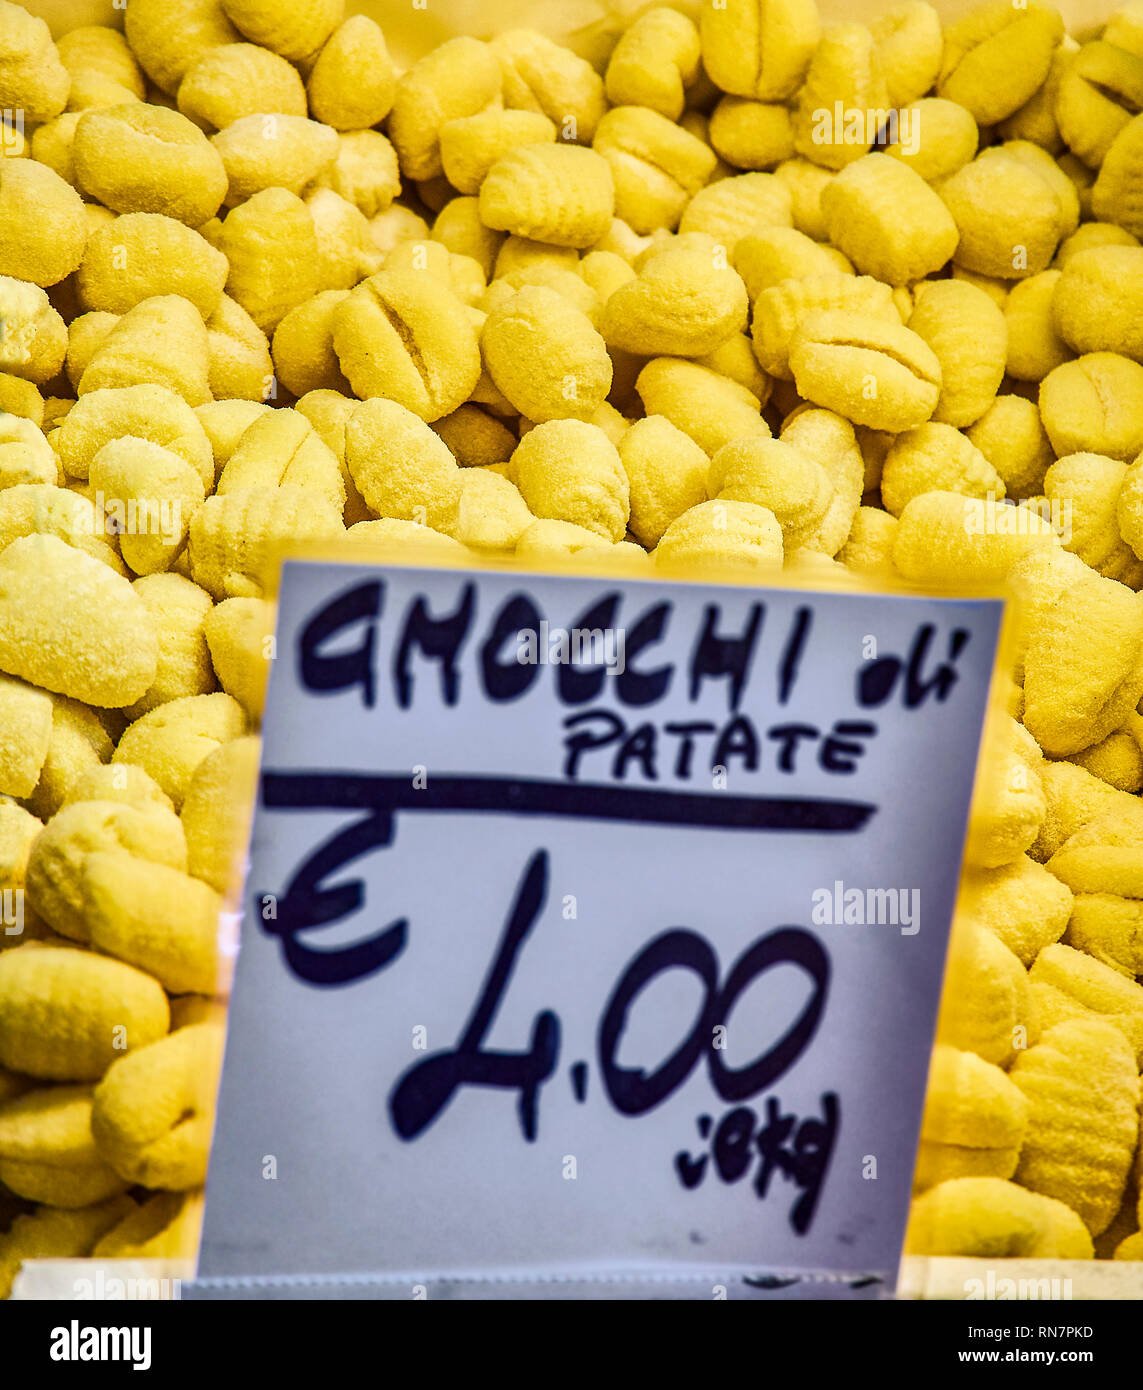 Hausgemachte Gnocchi di Gaumen für Verkauf in einem Shop. Frische Pasta, die typisch für die kulinarische Tradition von Italien. Stockfoto